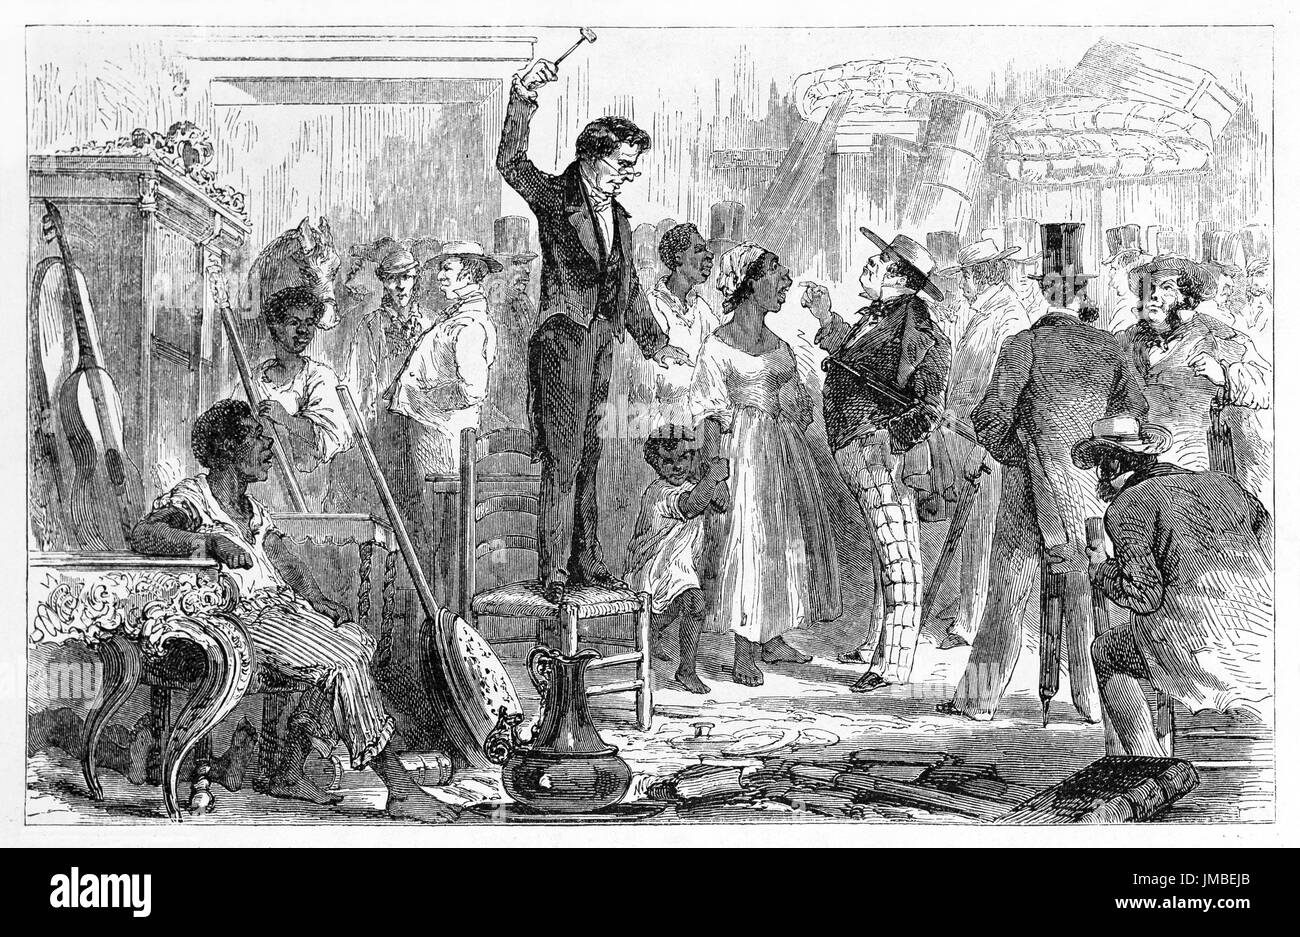 Crowdy schwarze Sklaven Verkauf als Objekte Ort in Rio de Janeiro behandelt. Alte graue Ton Radierung Stil Kunst von Riou, Le Tour du Monde, 1861 Stockfoto